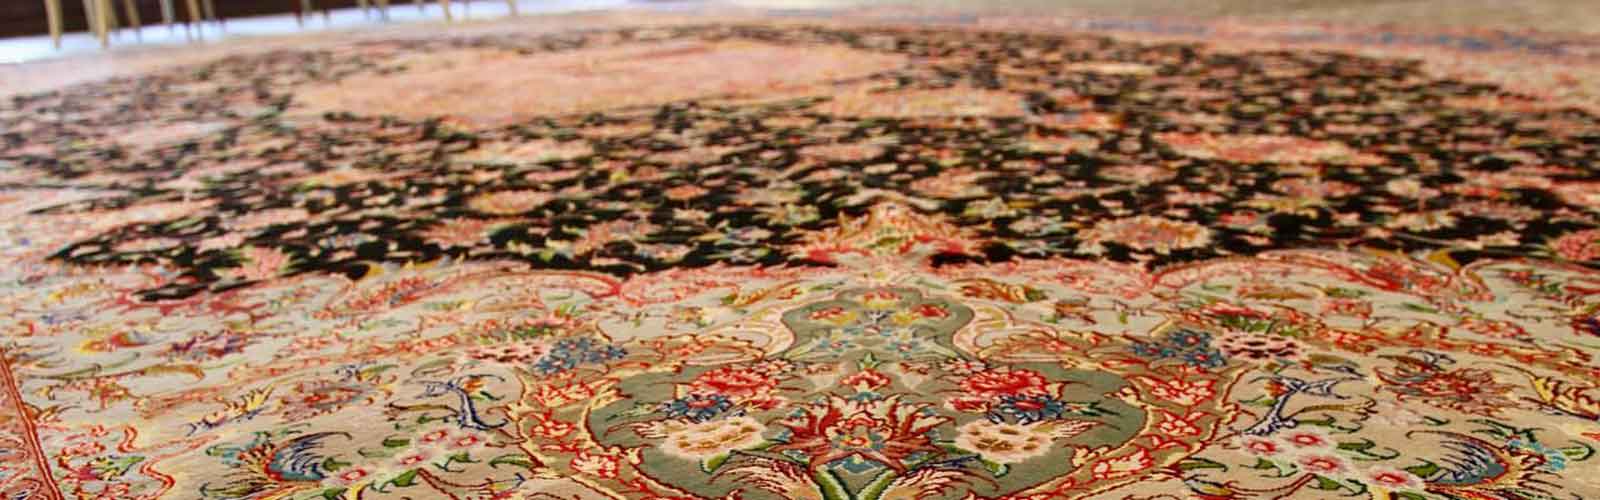 شستشوی تضمینی فرش ابریشم - الو قالیشویی